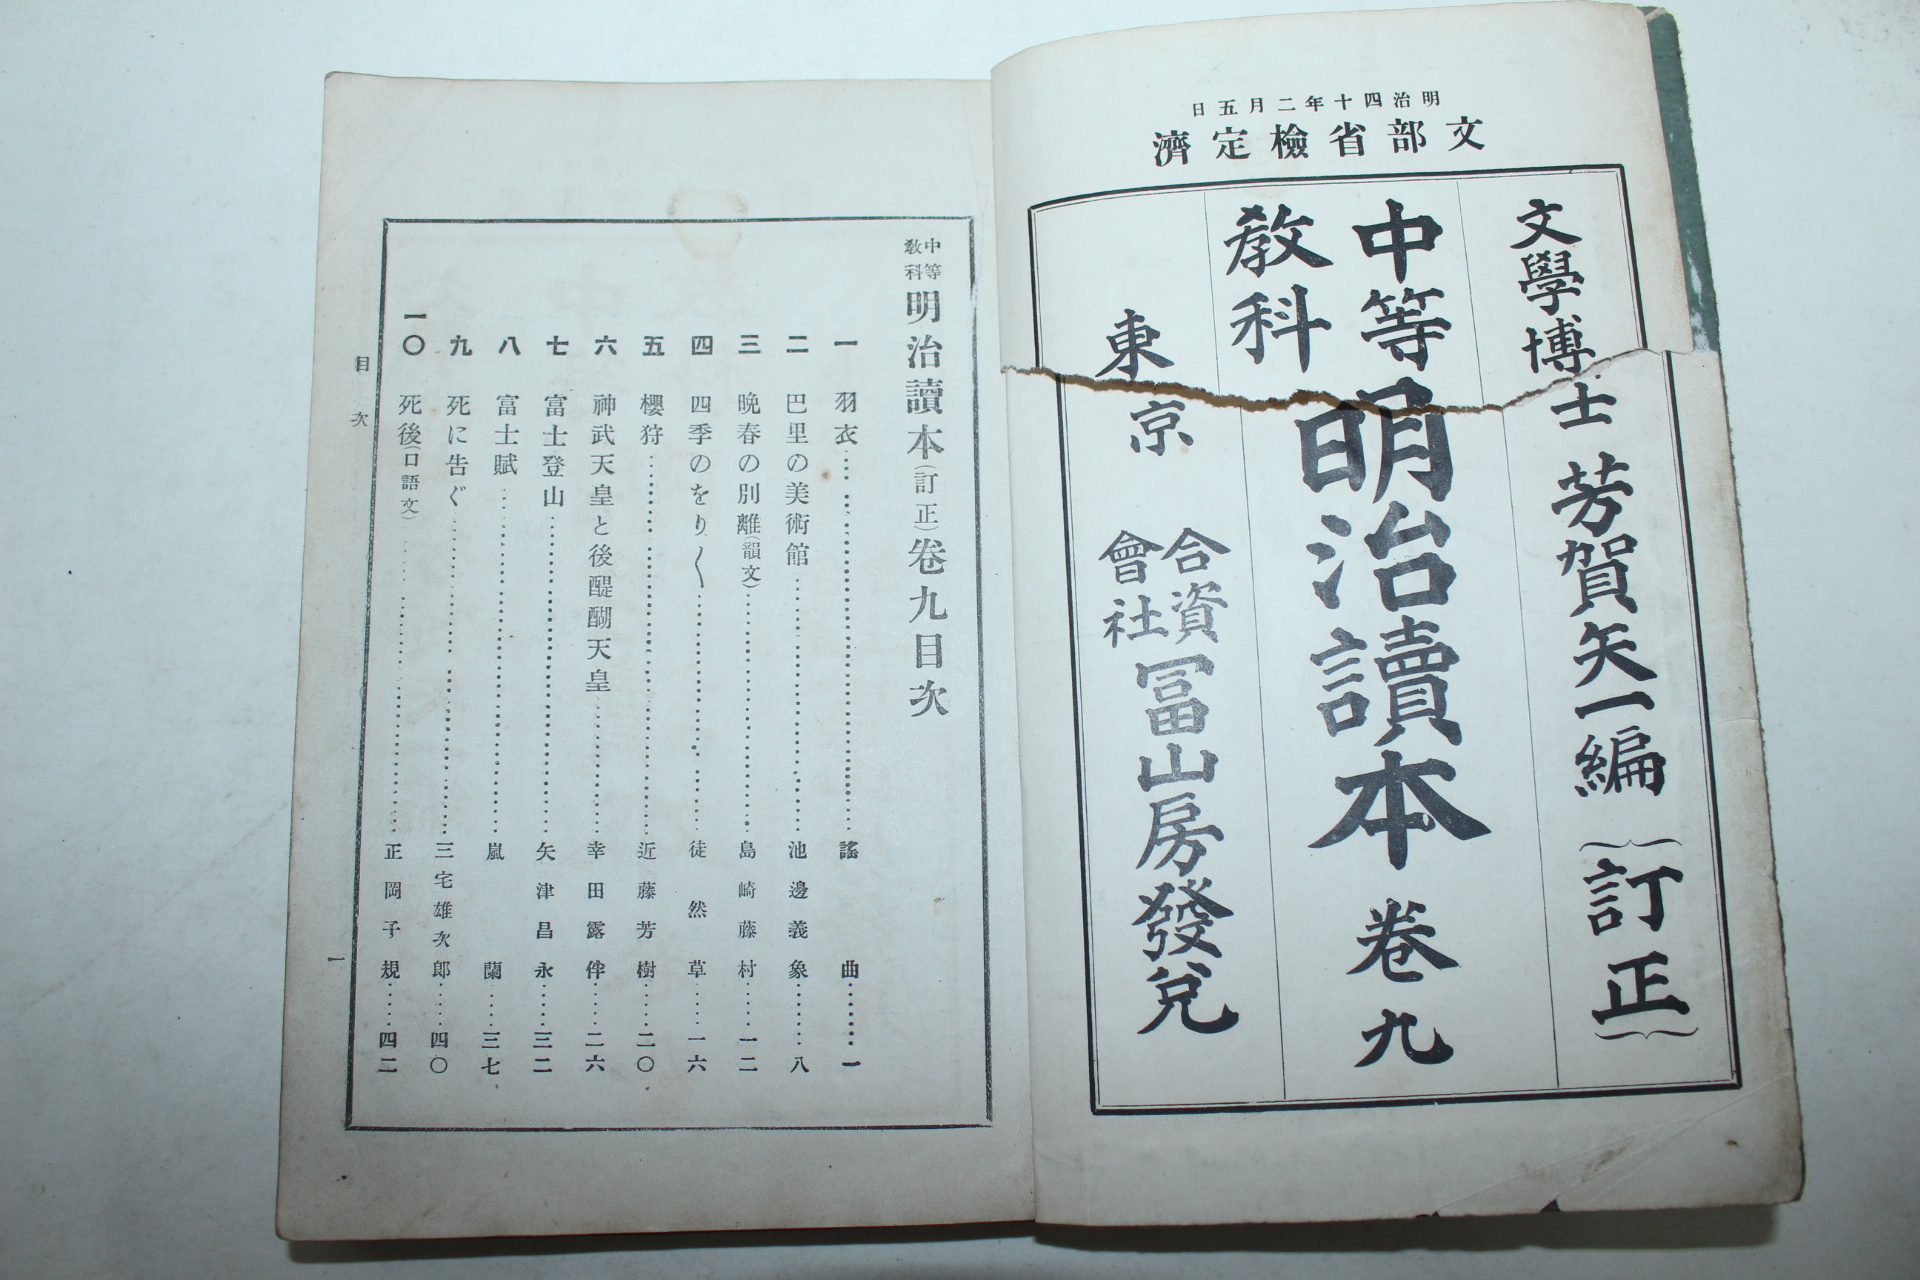 1907년(명치40년) 일본간행 중등교과 명치독본 2책